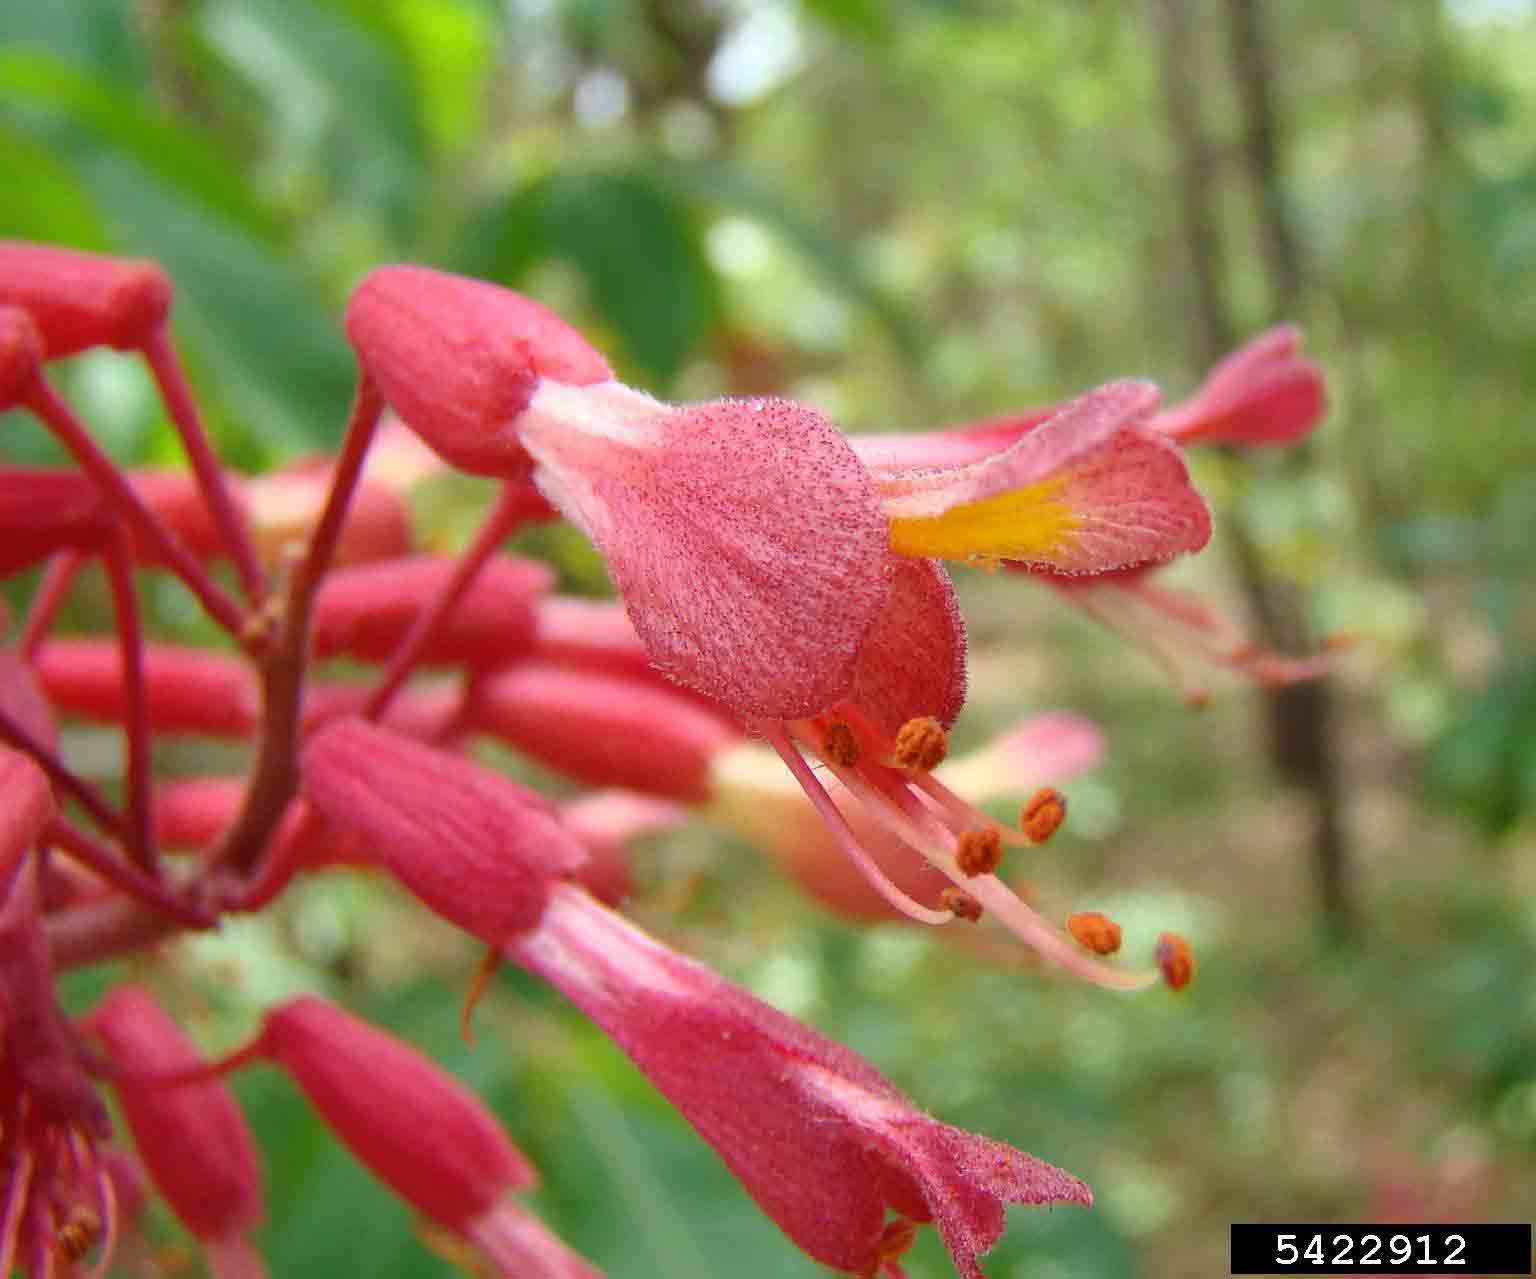 Red buckeye flower, 1.5" long